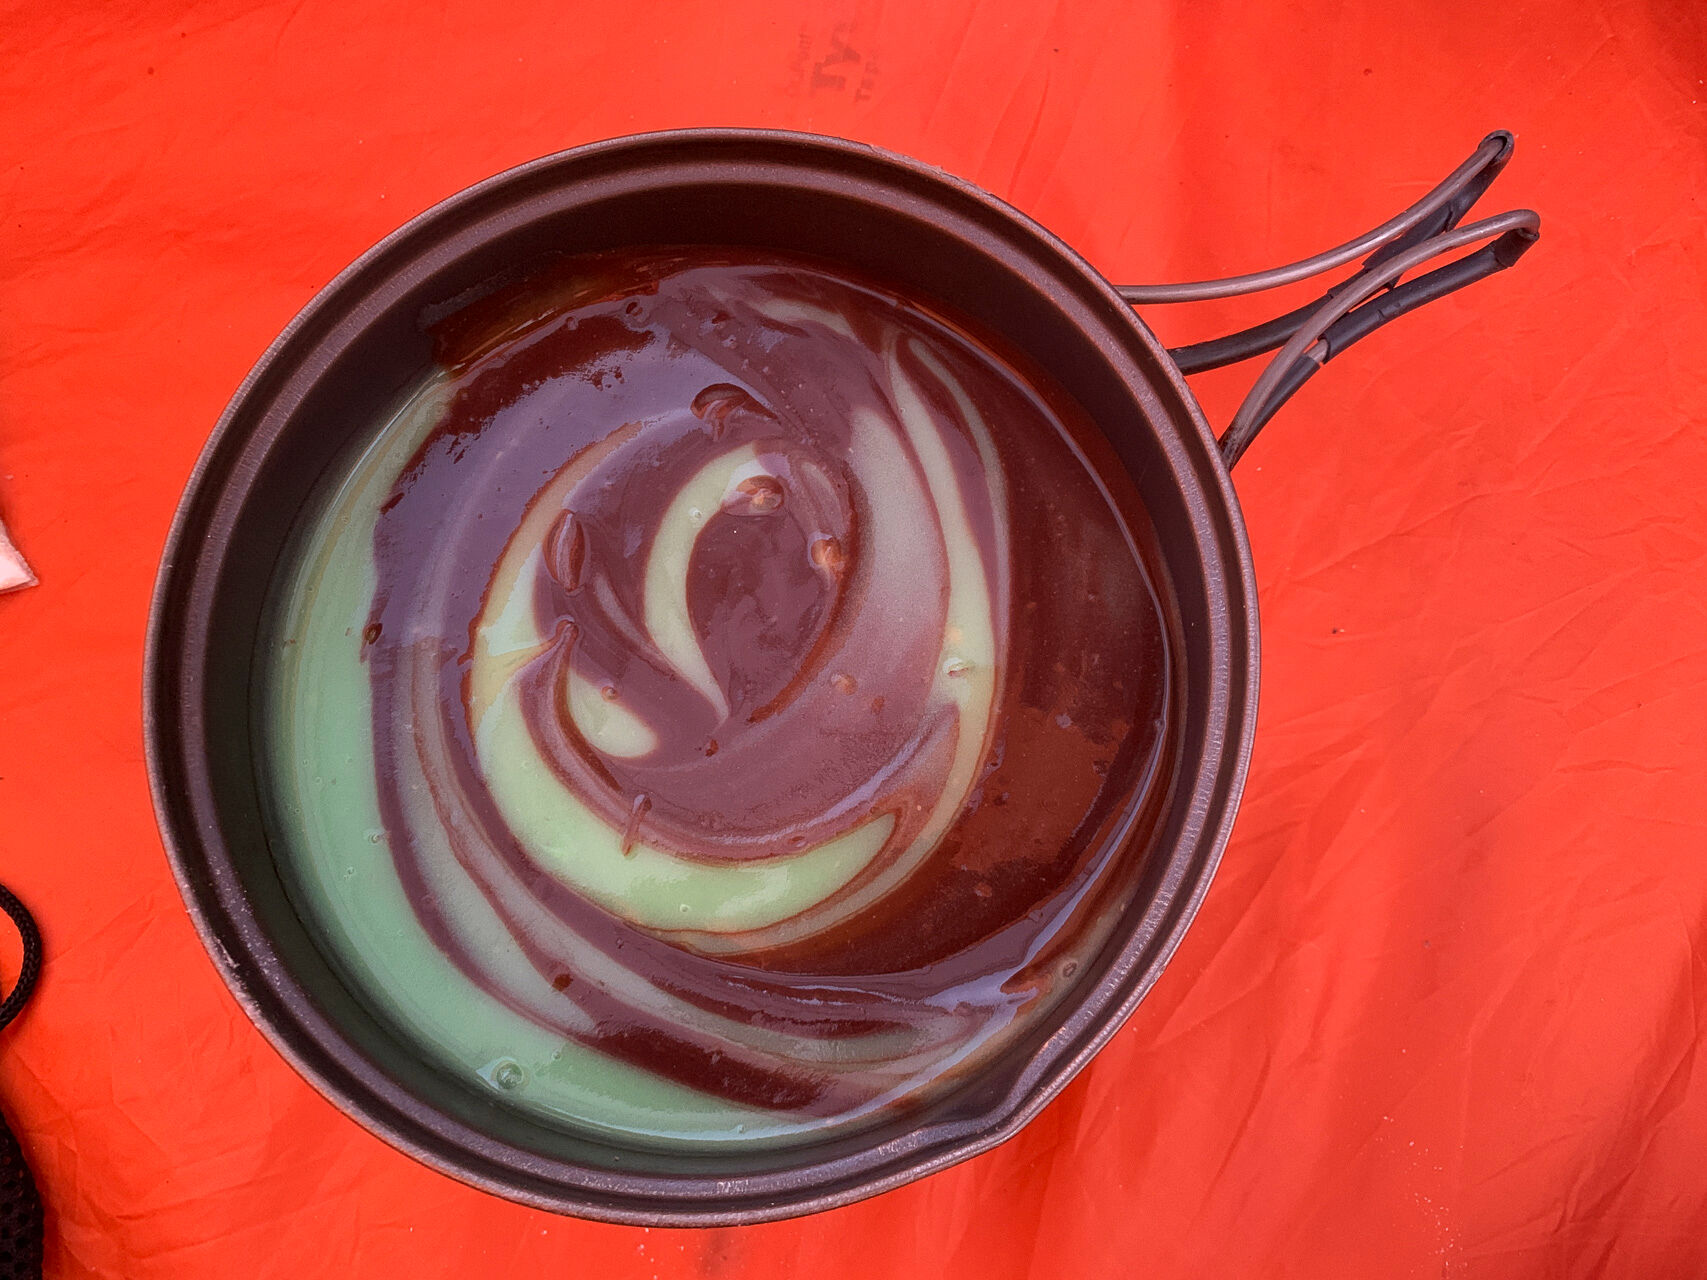 Birthday pudding: pistachio / chocolate swirl!